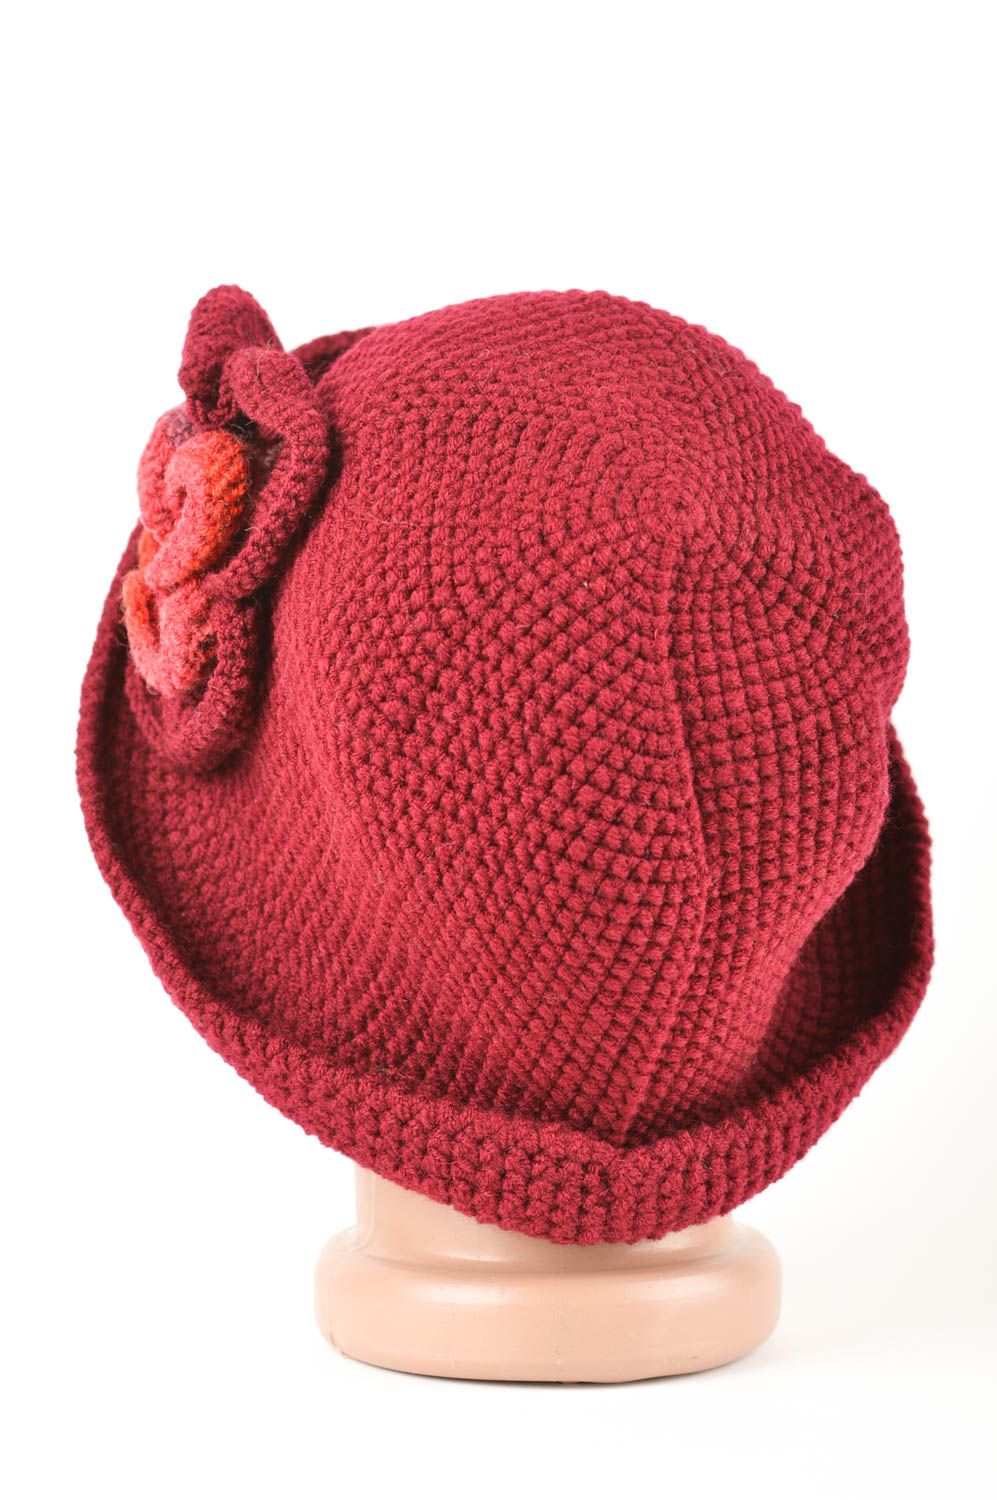 Вязаная шапочка из шерсти ручной работы стильная шапка зимний головной убор фото 5